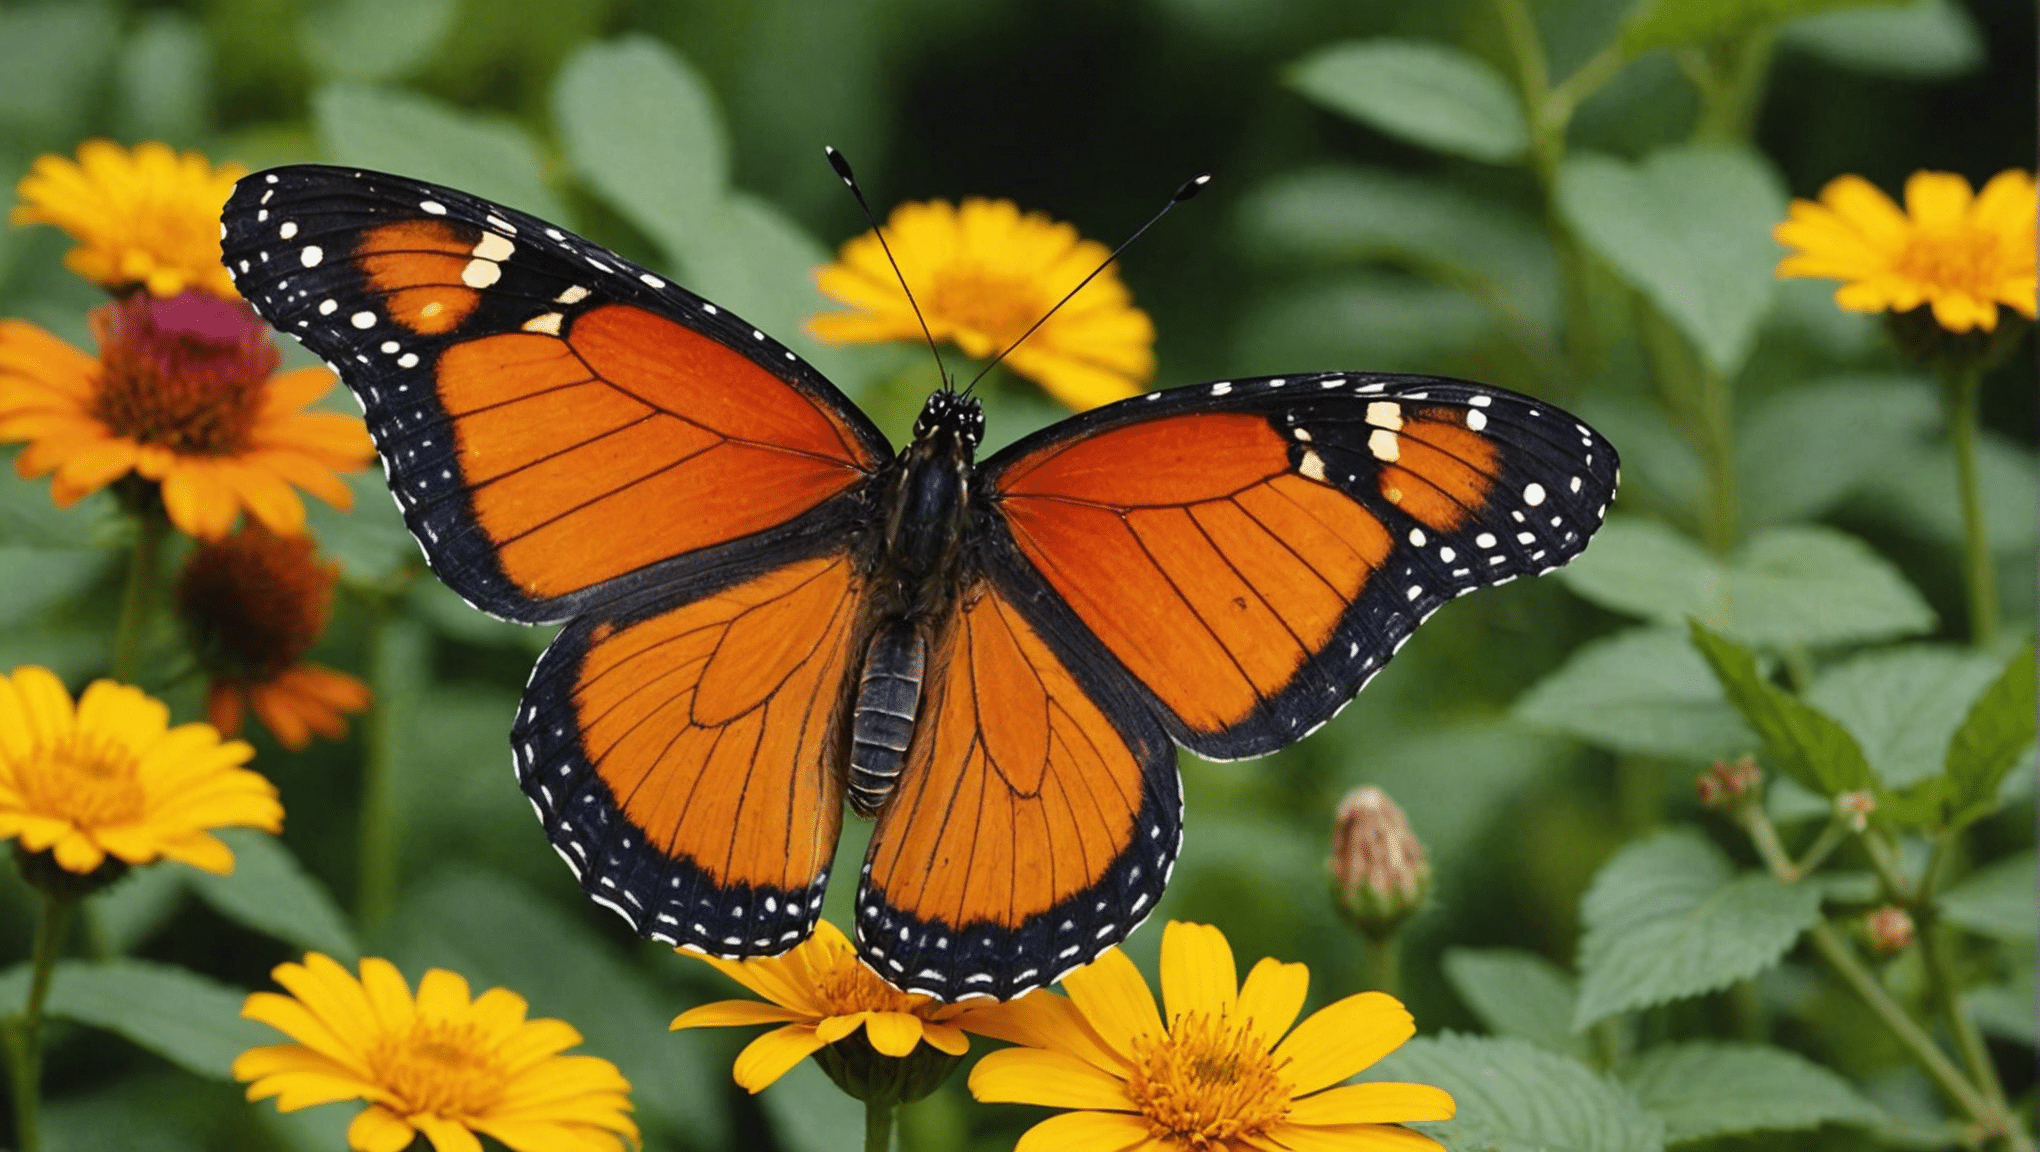 Entdecken Sie mit unseren spannenden Inhalten lustige und faszinierende Fakten über Schmetterlinge.